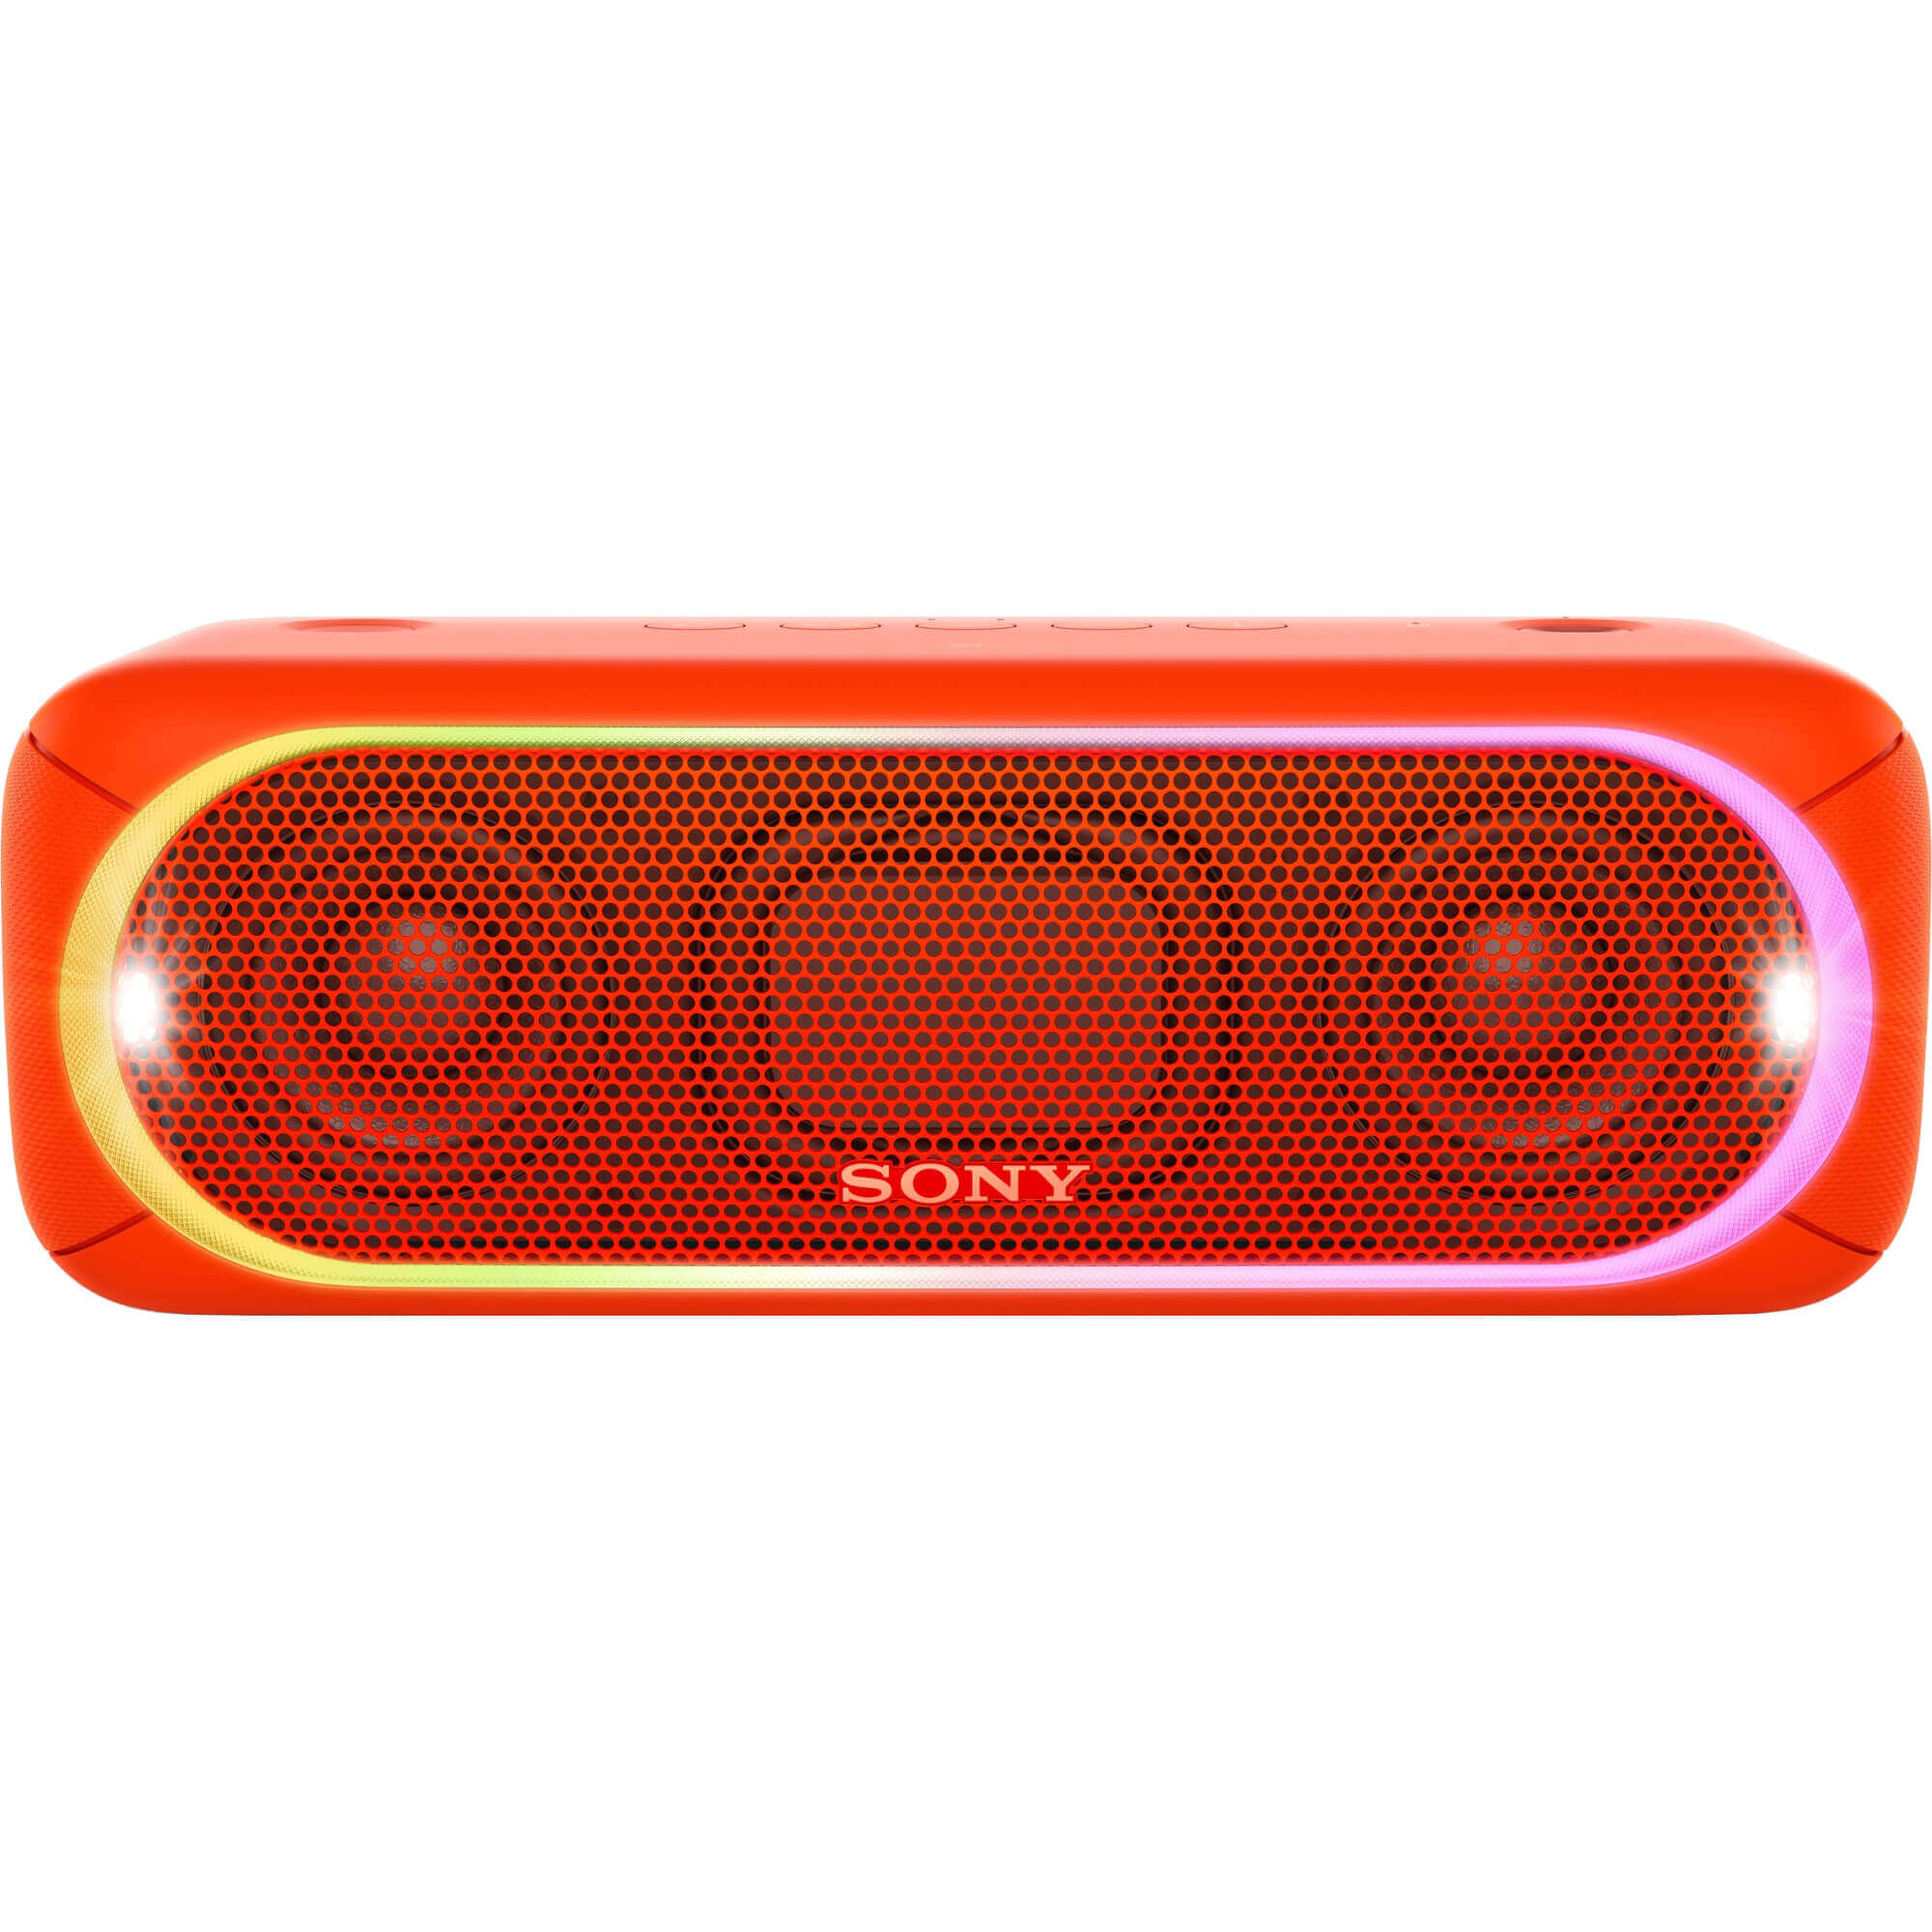  Boxa portabila Sony SRSXB30R.EU8, Bluetooth, Rosu 